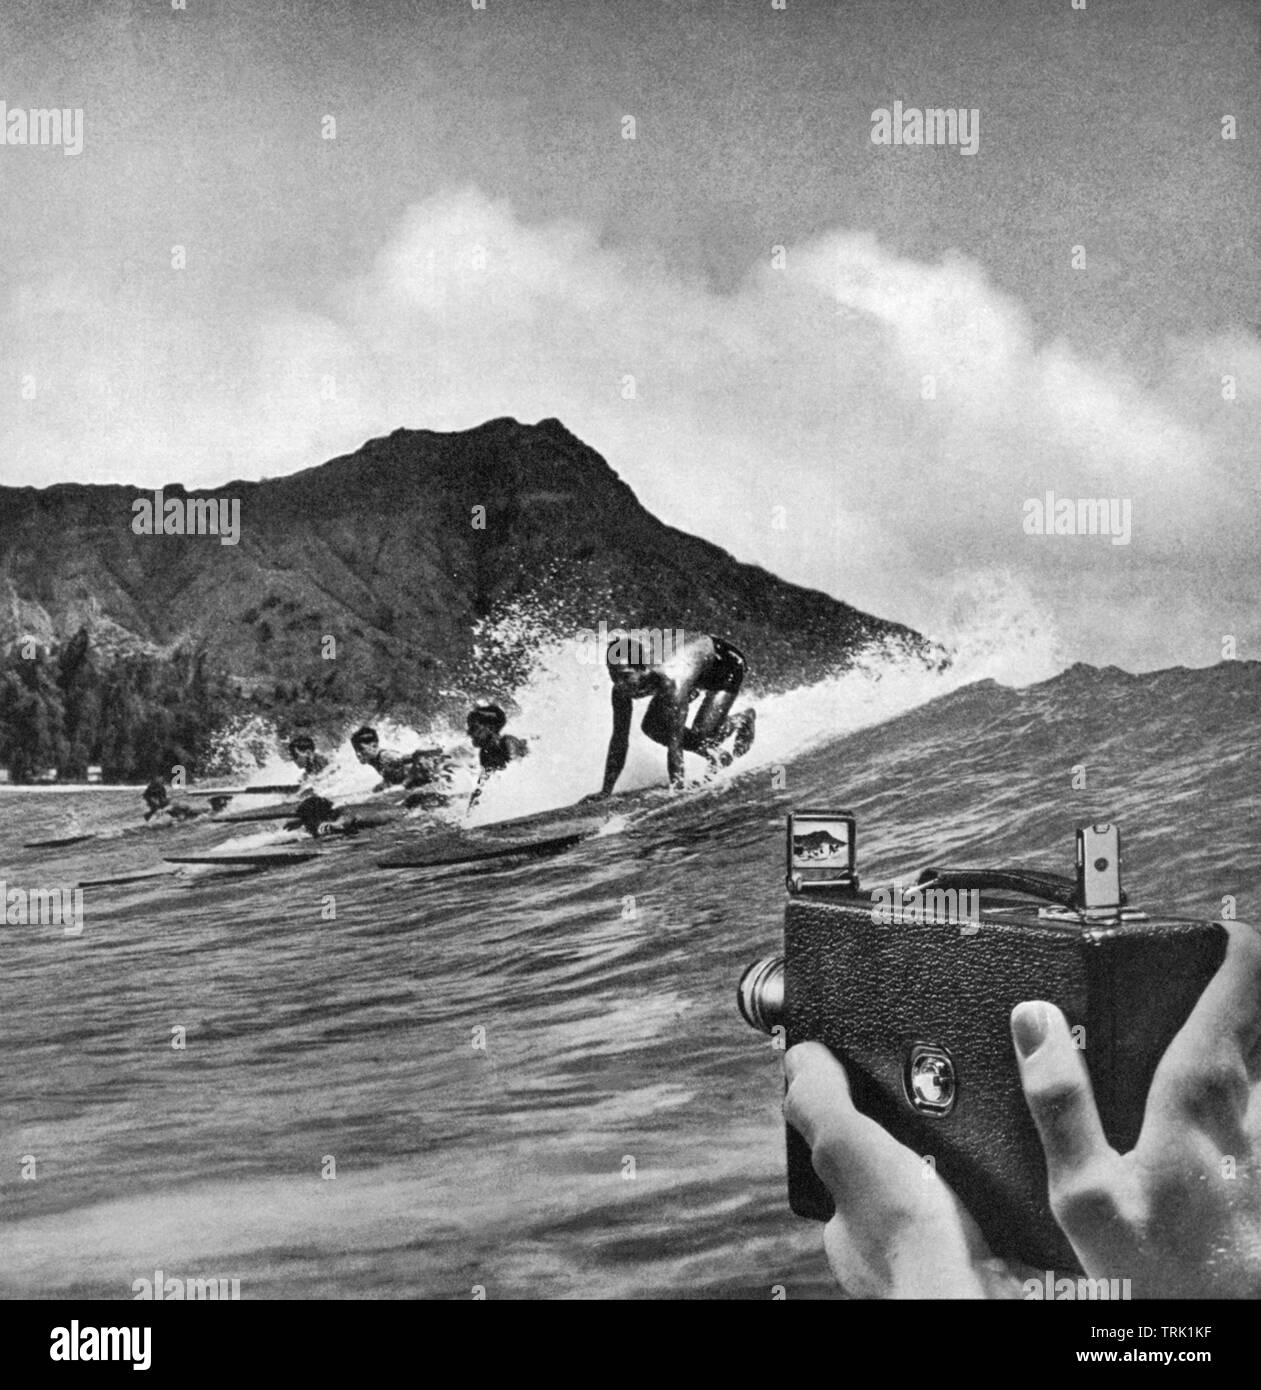 Avis de surfeurs attraper une vague à Waikiki en 1934 dans une annonce dans un magazine pour Kodak cameras. Banque D'Images